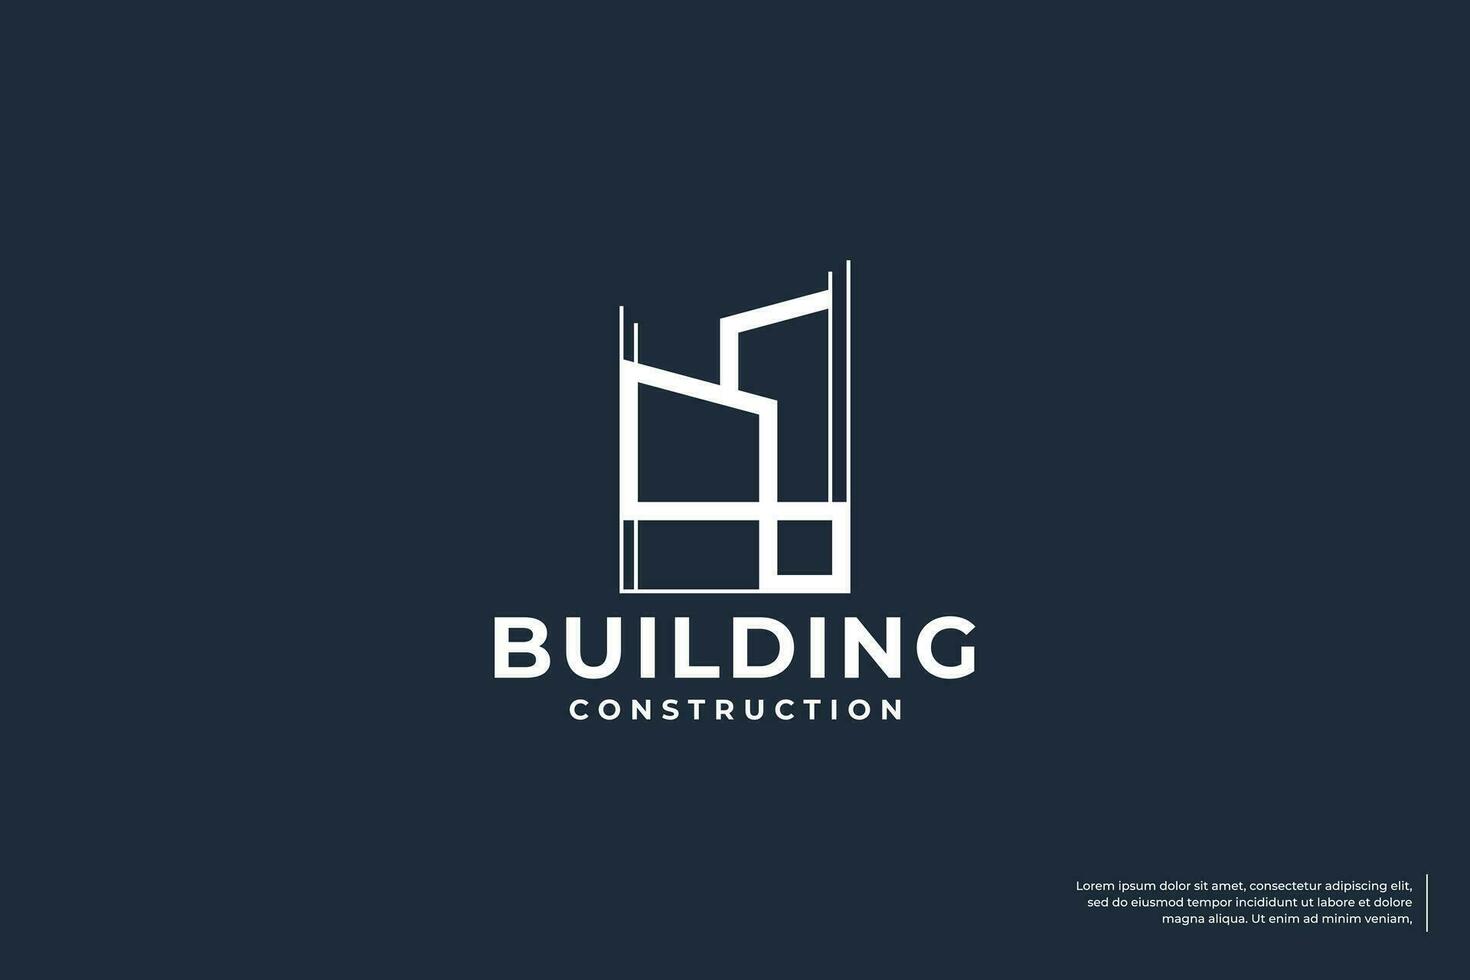 Building construction logo design template vector